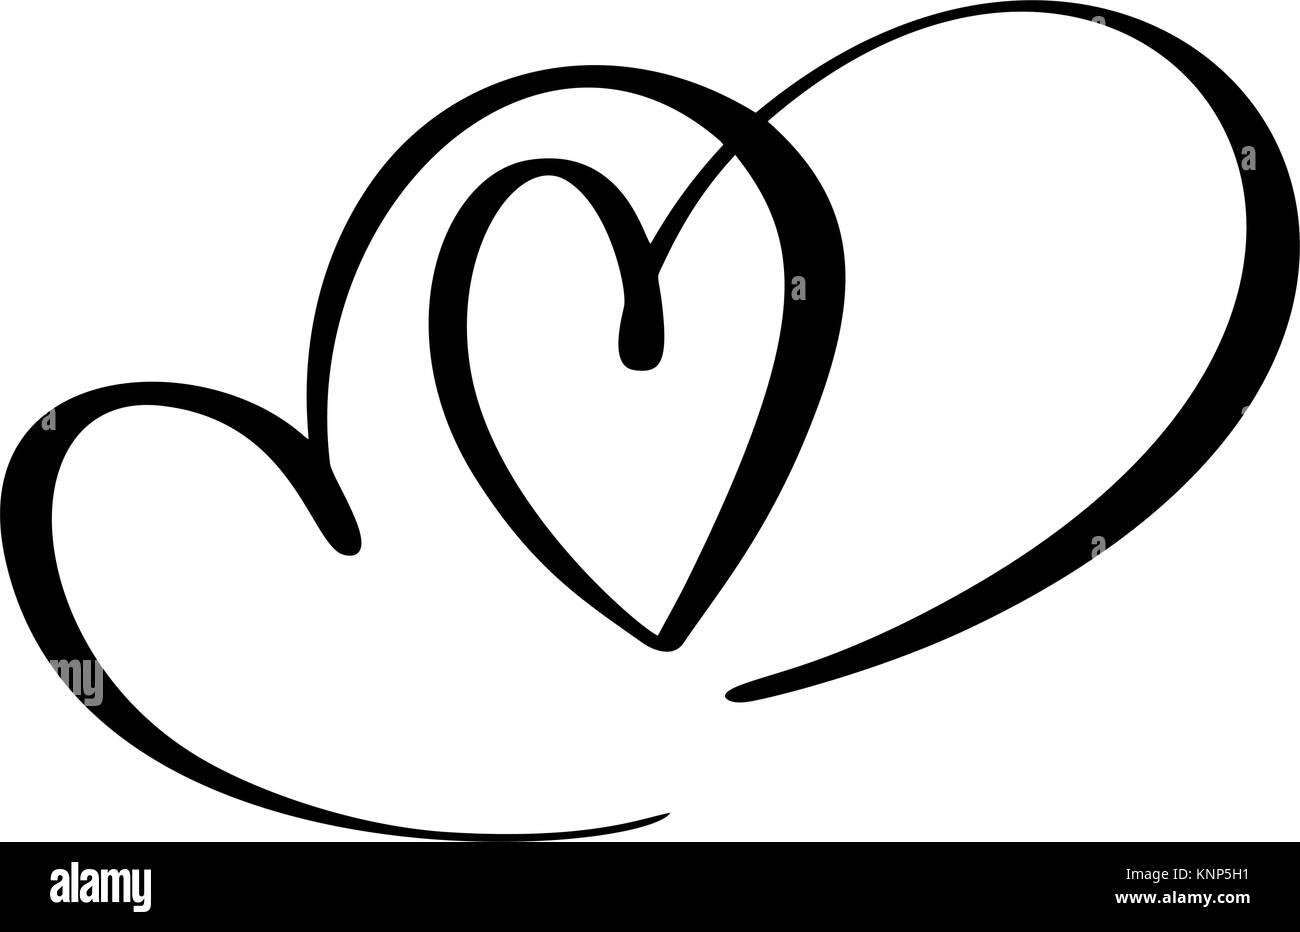 Zwei Liebende Herzen. Handgefertigte vektor Kalligraphie. Dekor für Grußkarten, Tasse, Foto Overlays, t-shirt Drucken, Flyer, Plakat design Stock Vektor